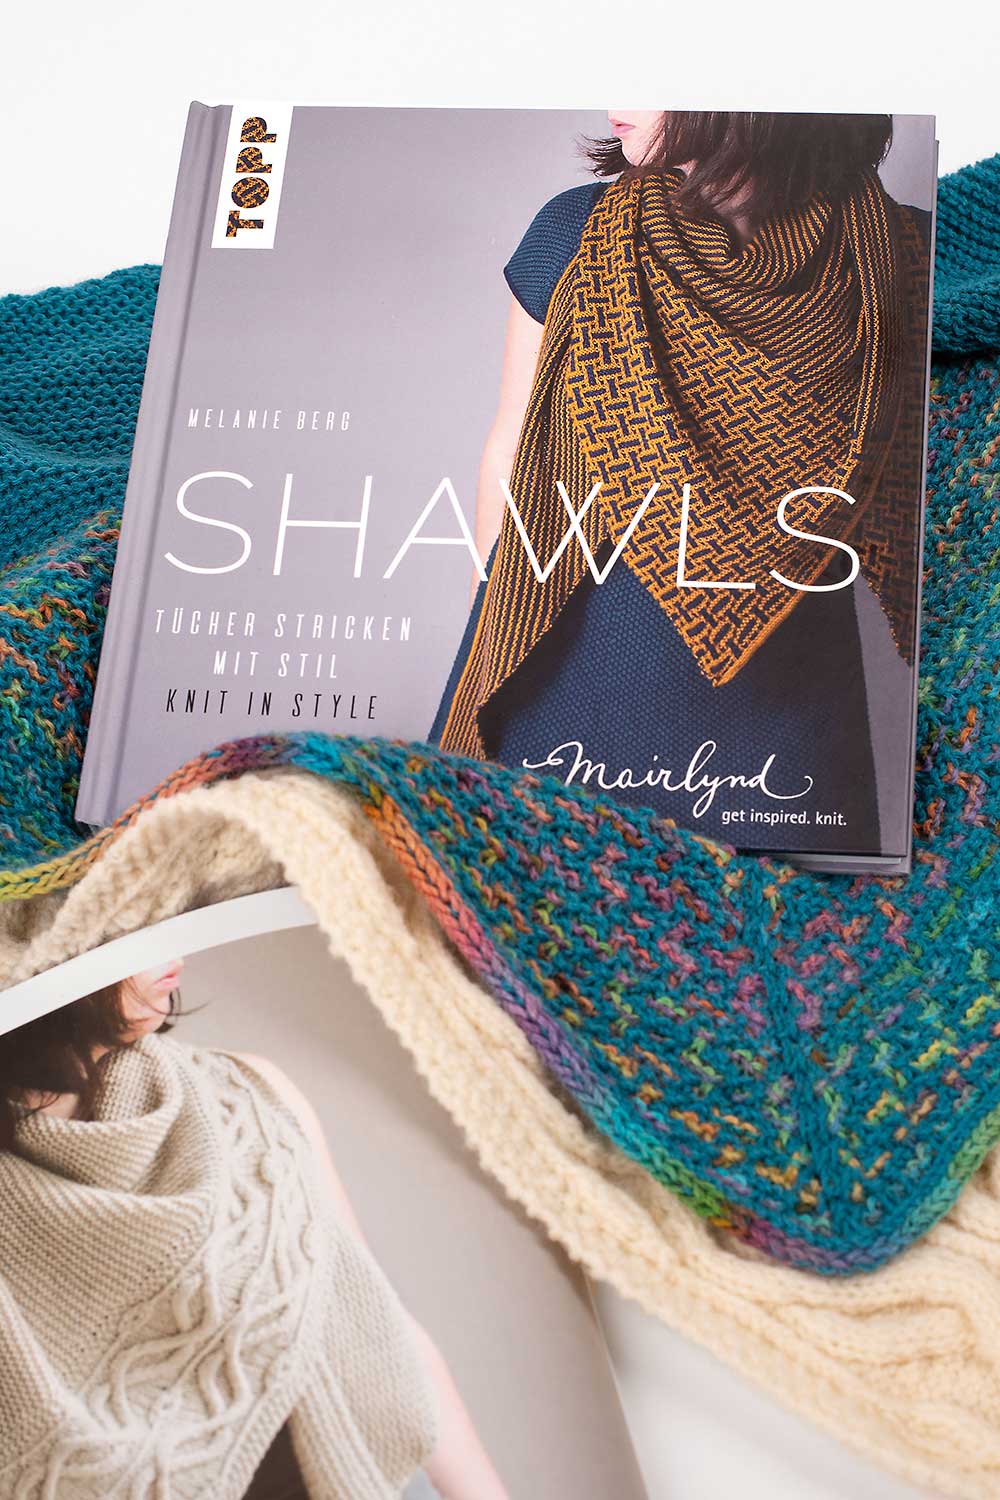 Shawls - Tücher stricken mit Stil. Knit in Style.